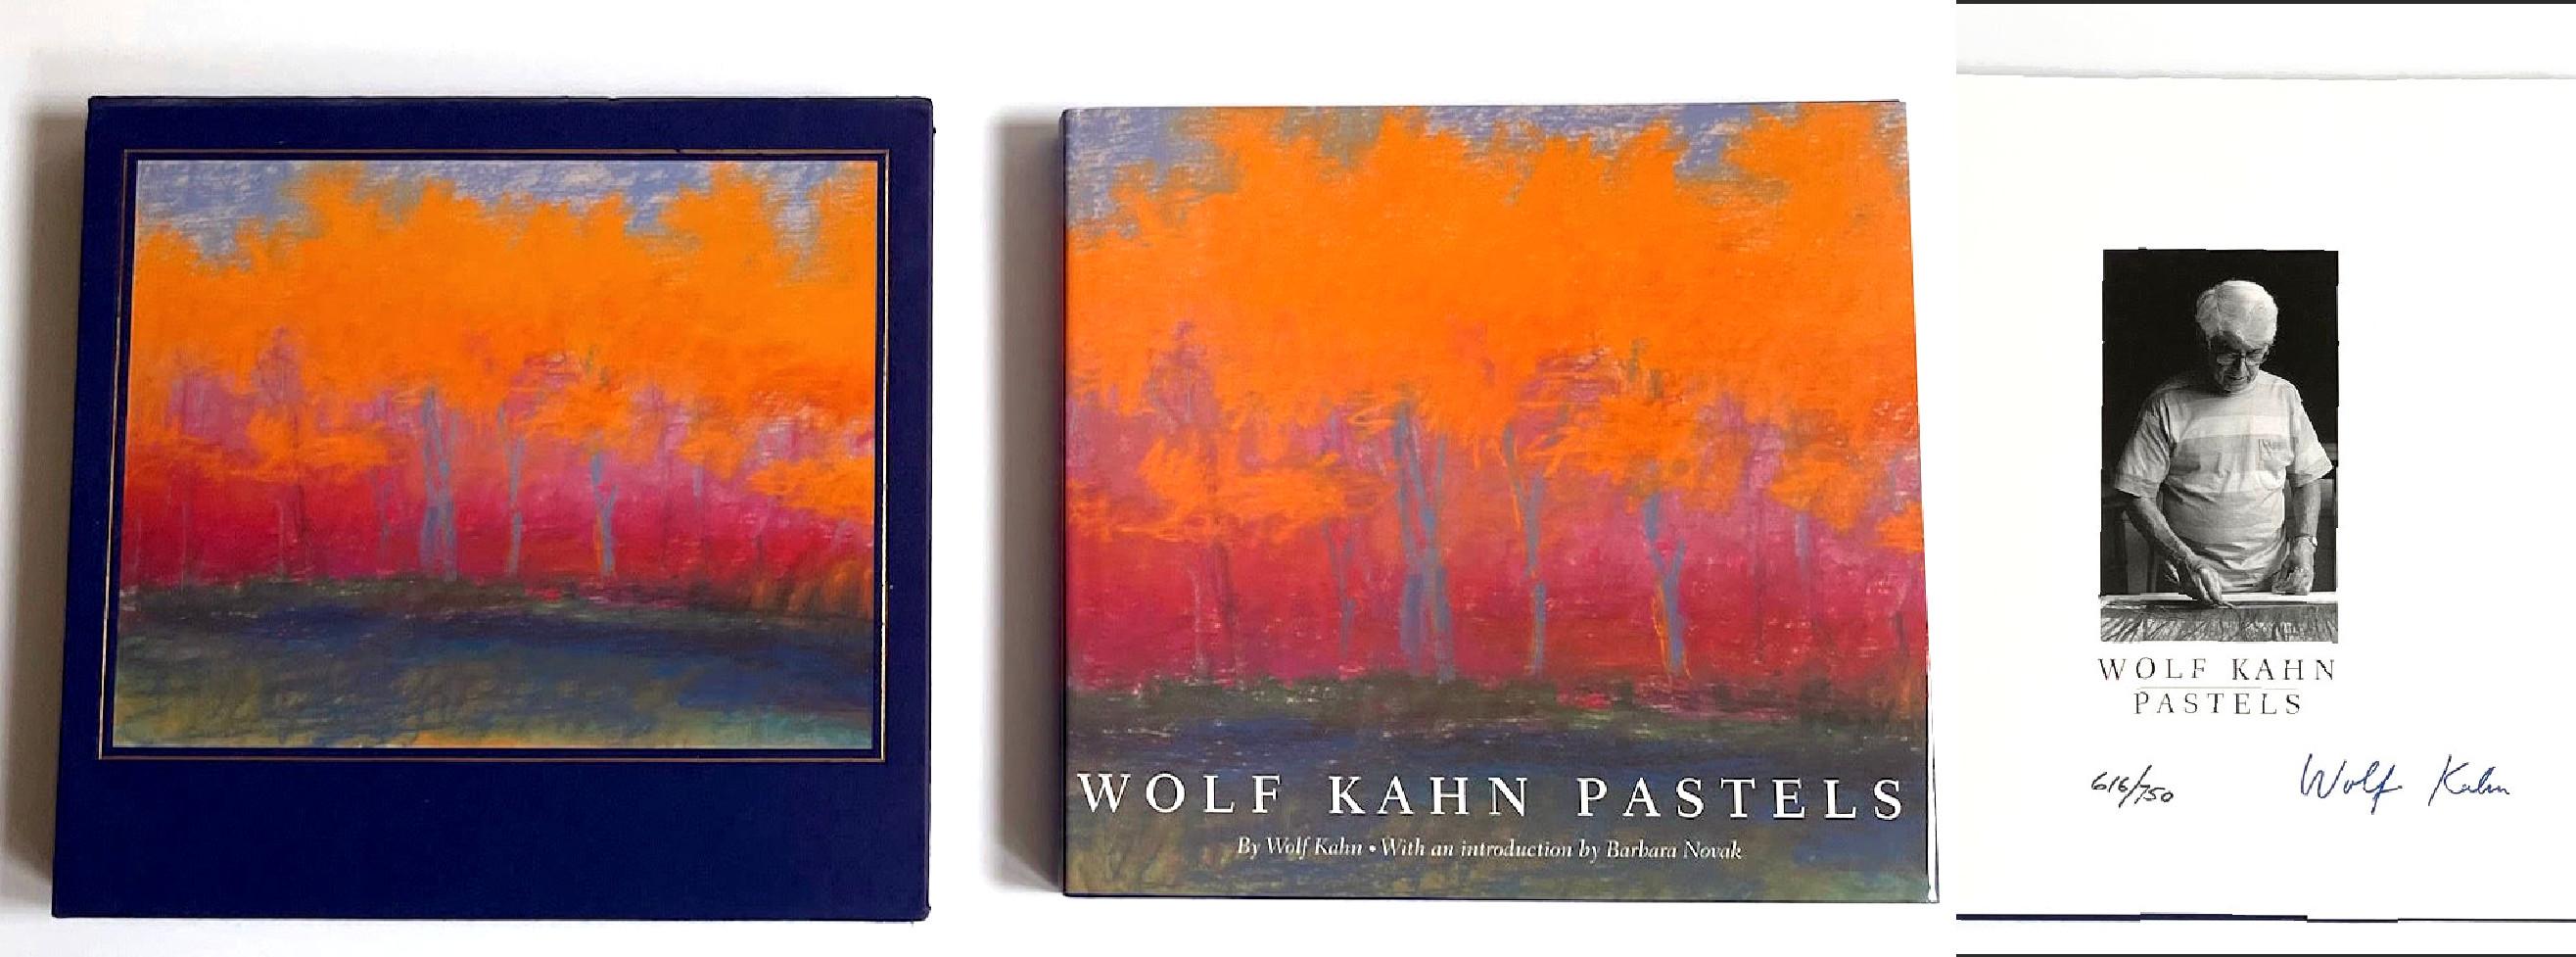 Pastels de Kahn (monographie avec étui, signée et numérotée à la main), 2000
Monographie reliée avec étui et jaquette (signée et numérotée à la main par Wolf Kahn).
Signé à la main et numéroté 616/750 par Wolf Kahn sur la demi-page de titre.
10 × 11